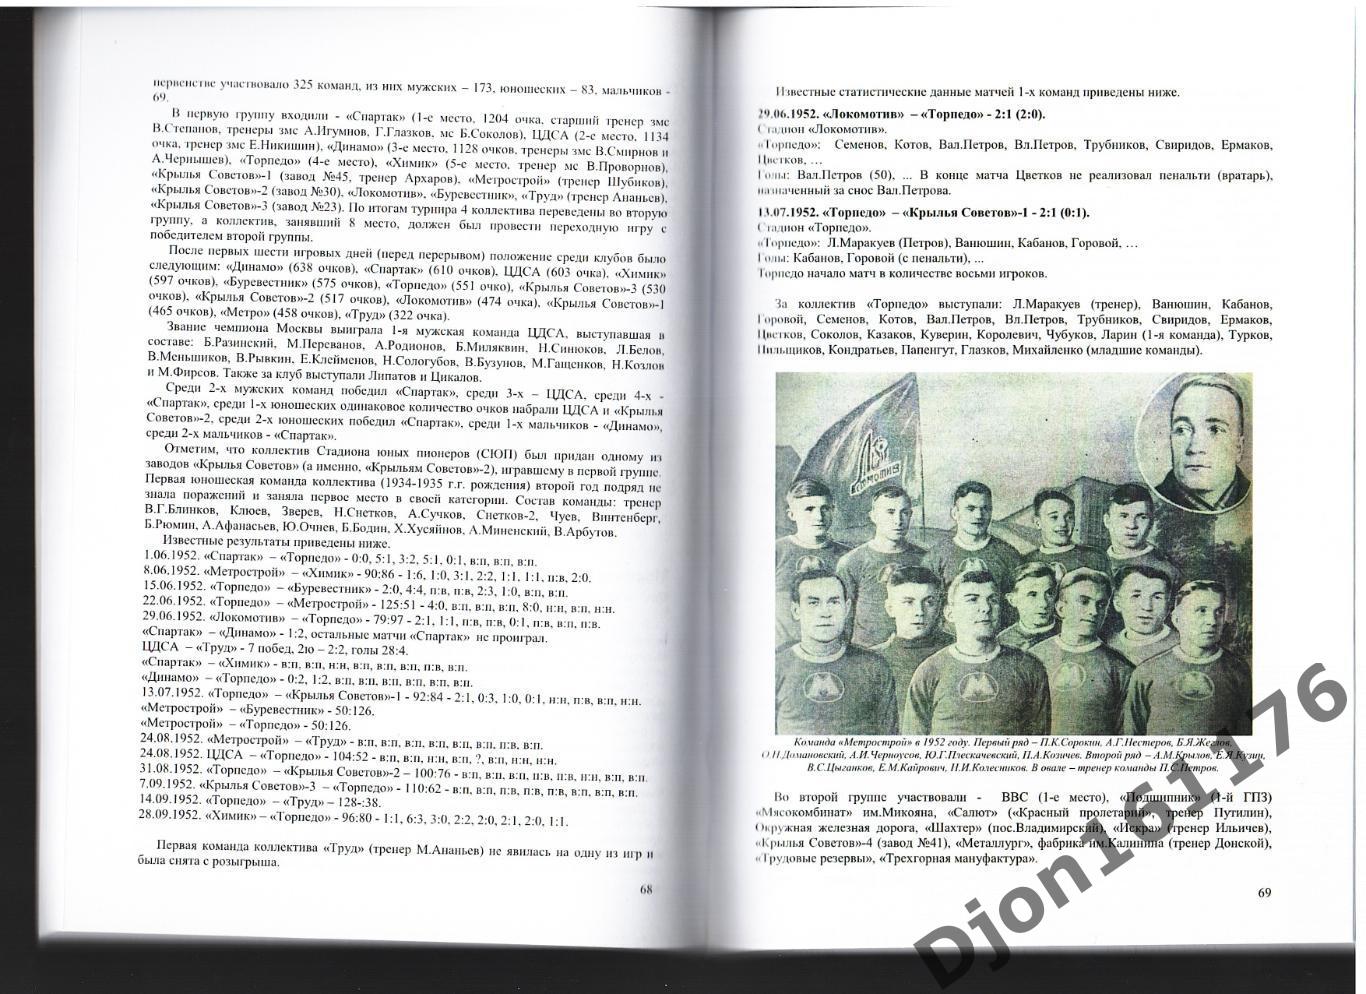 Г.Н.Калянов. «Московский календарь 1946-1959 гг.». 1